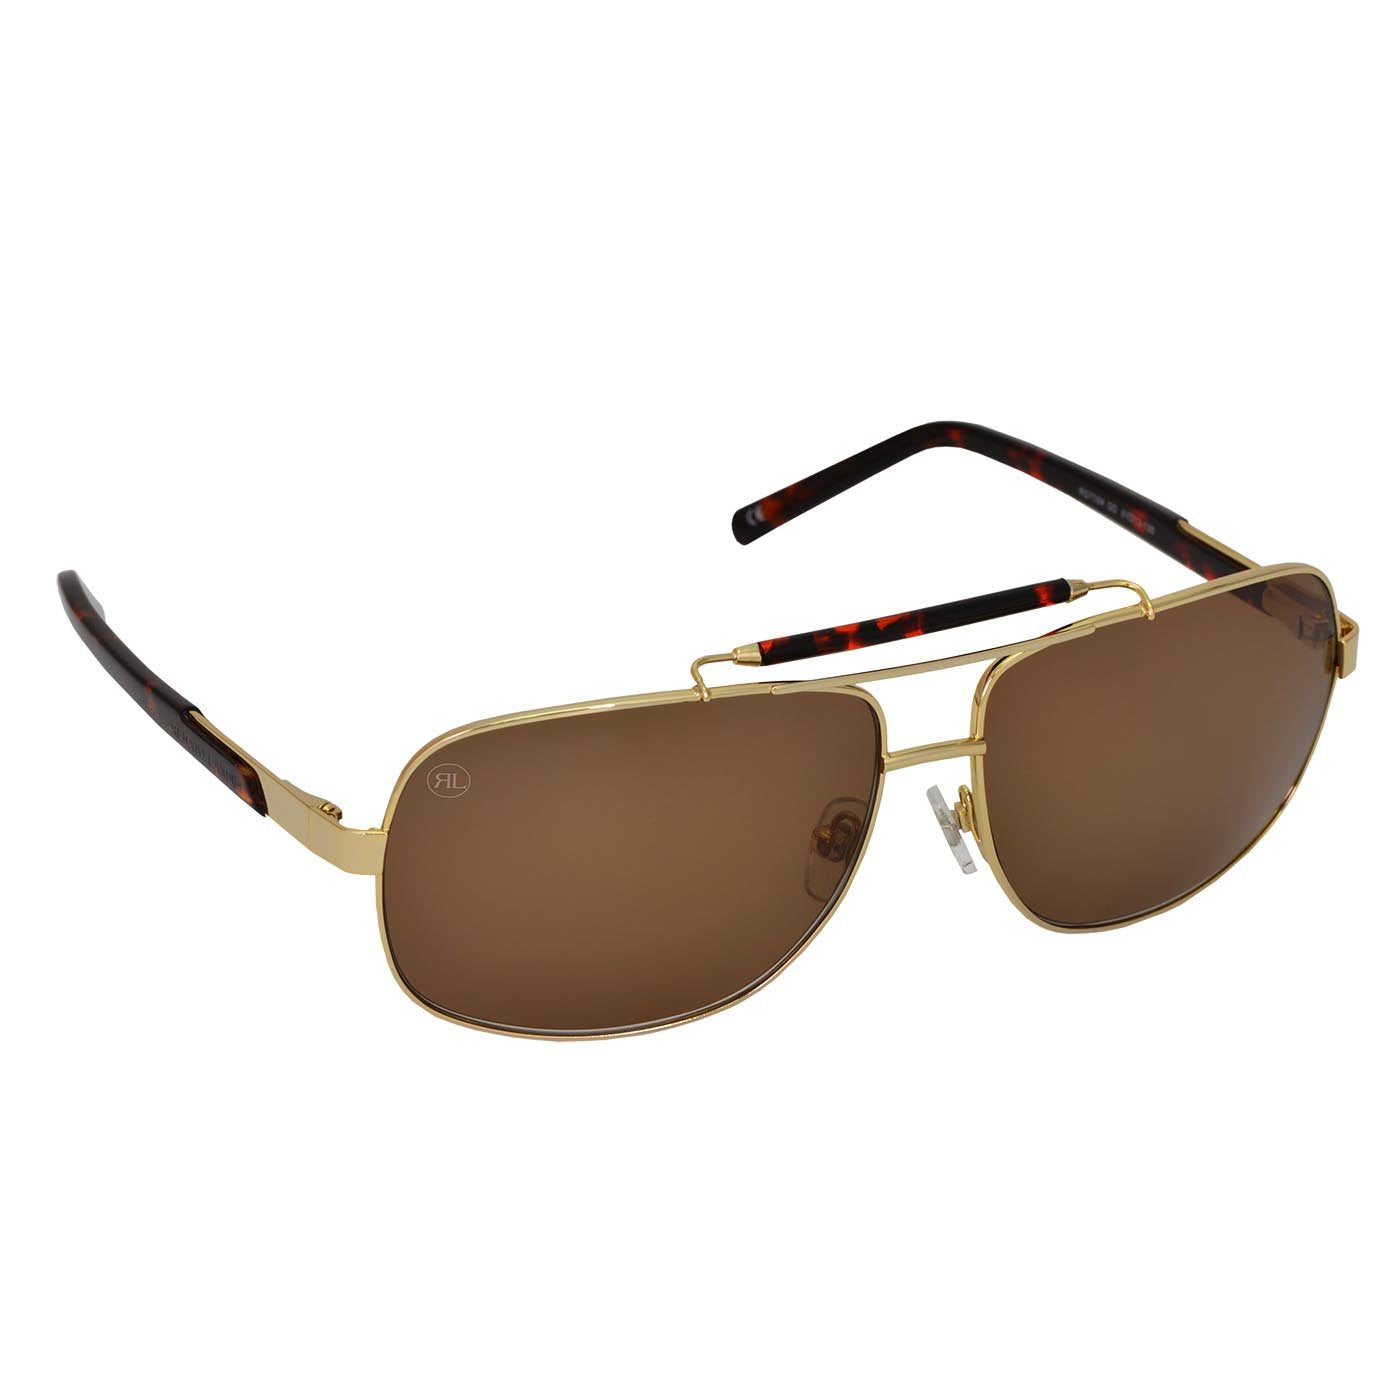 RENATO LANDINI Men's Sunglasses Havana with Gold/ Sun Shield